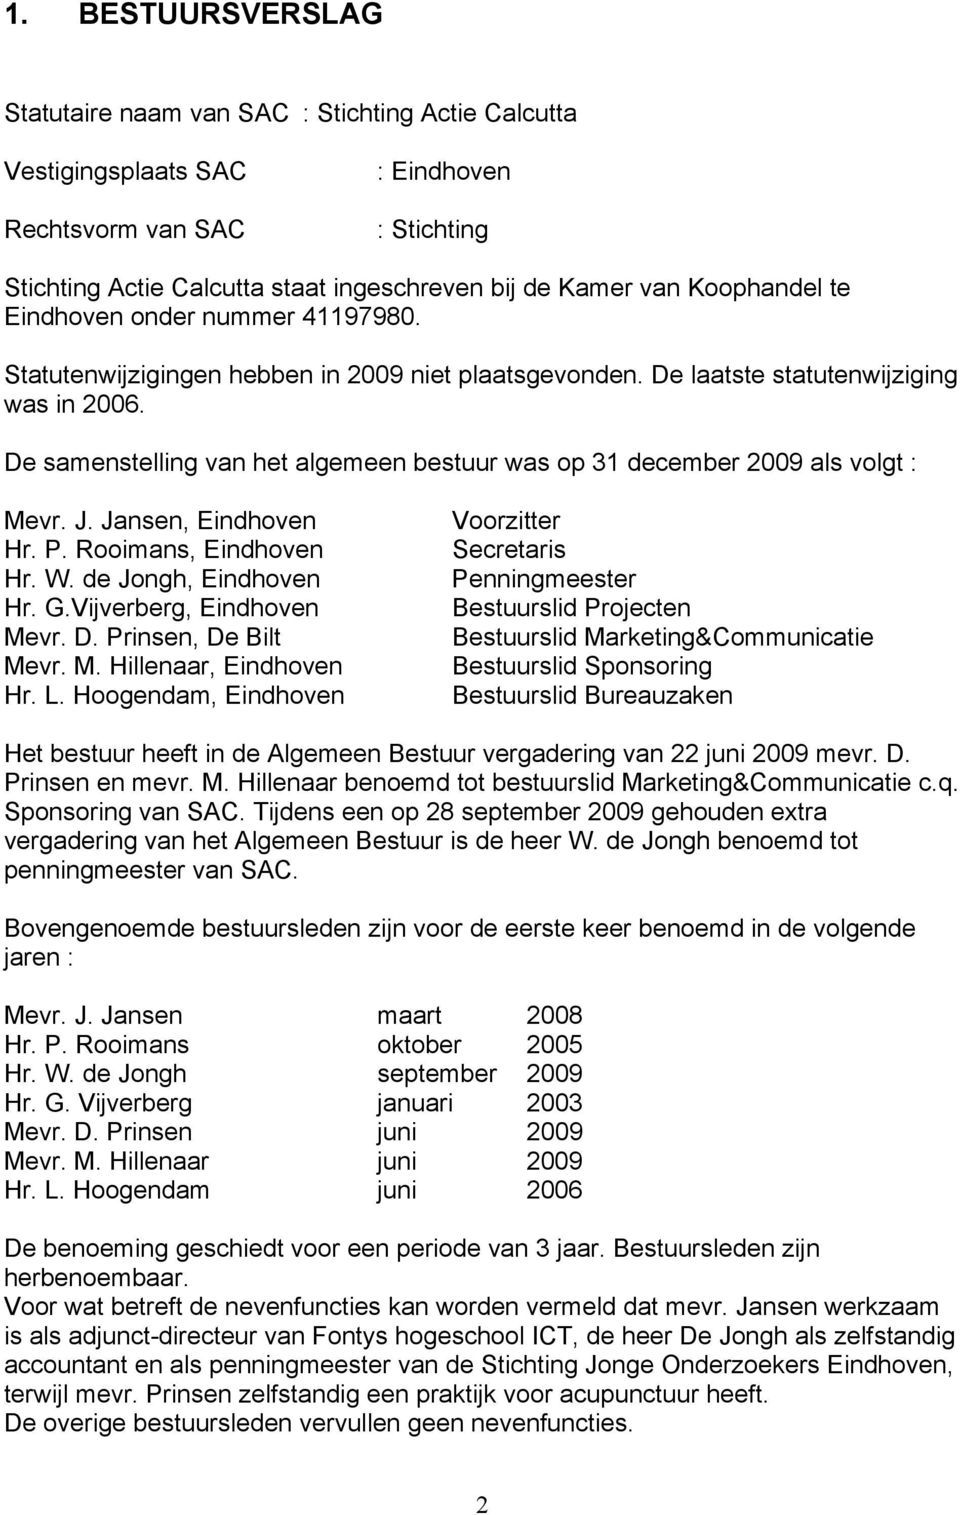 De samenstelling van het algemeen bestuur was op 31 december 2009 als volgt : Mevr. J. Jansen, Eindhoven Hr. P. Rooimans, Eindhoven Hr. W. de Jongh, Eindhoven Hr. G.Vijverberg, Eindhoven Mevr. D.